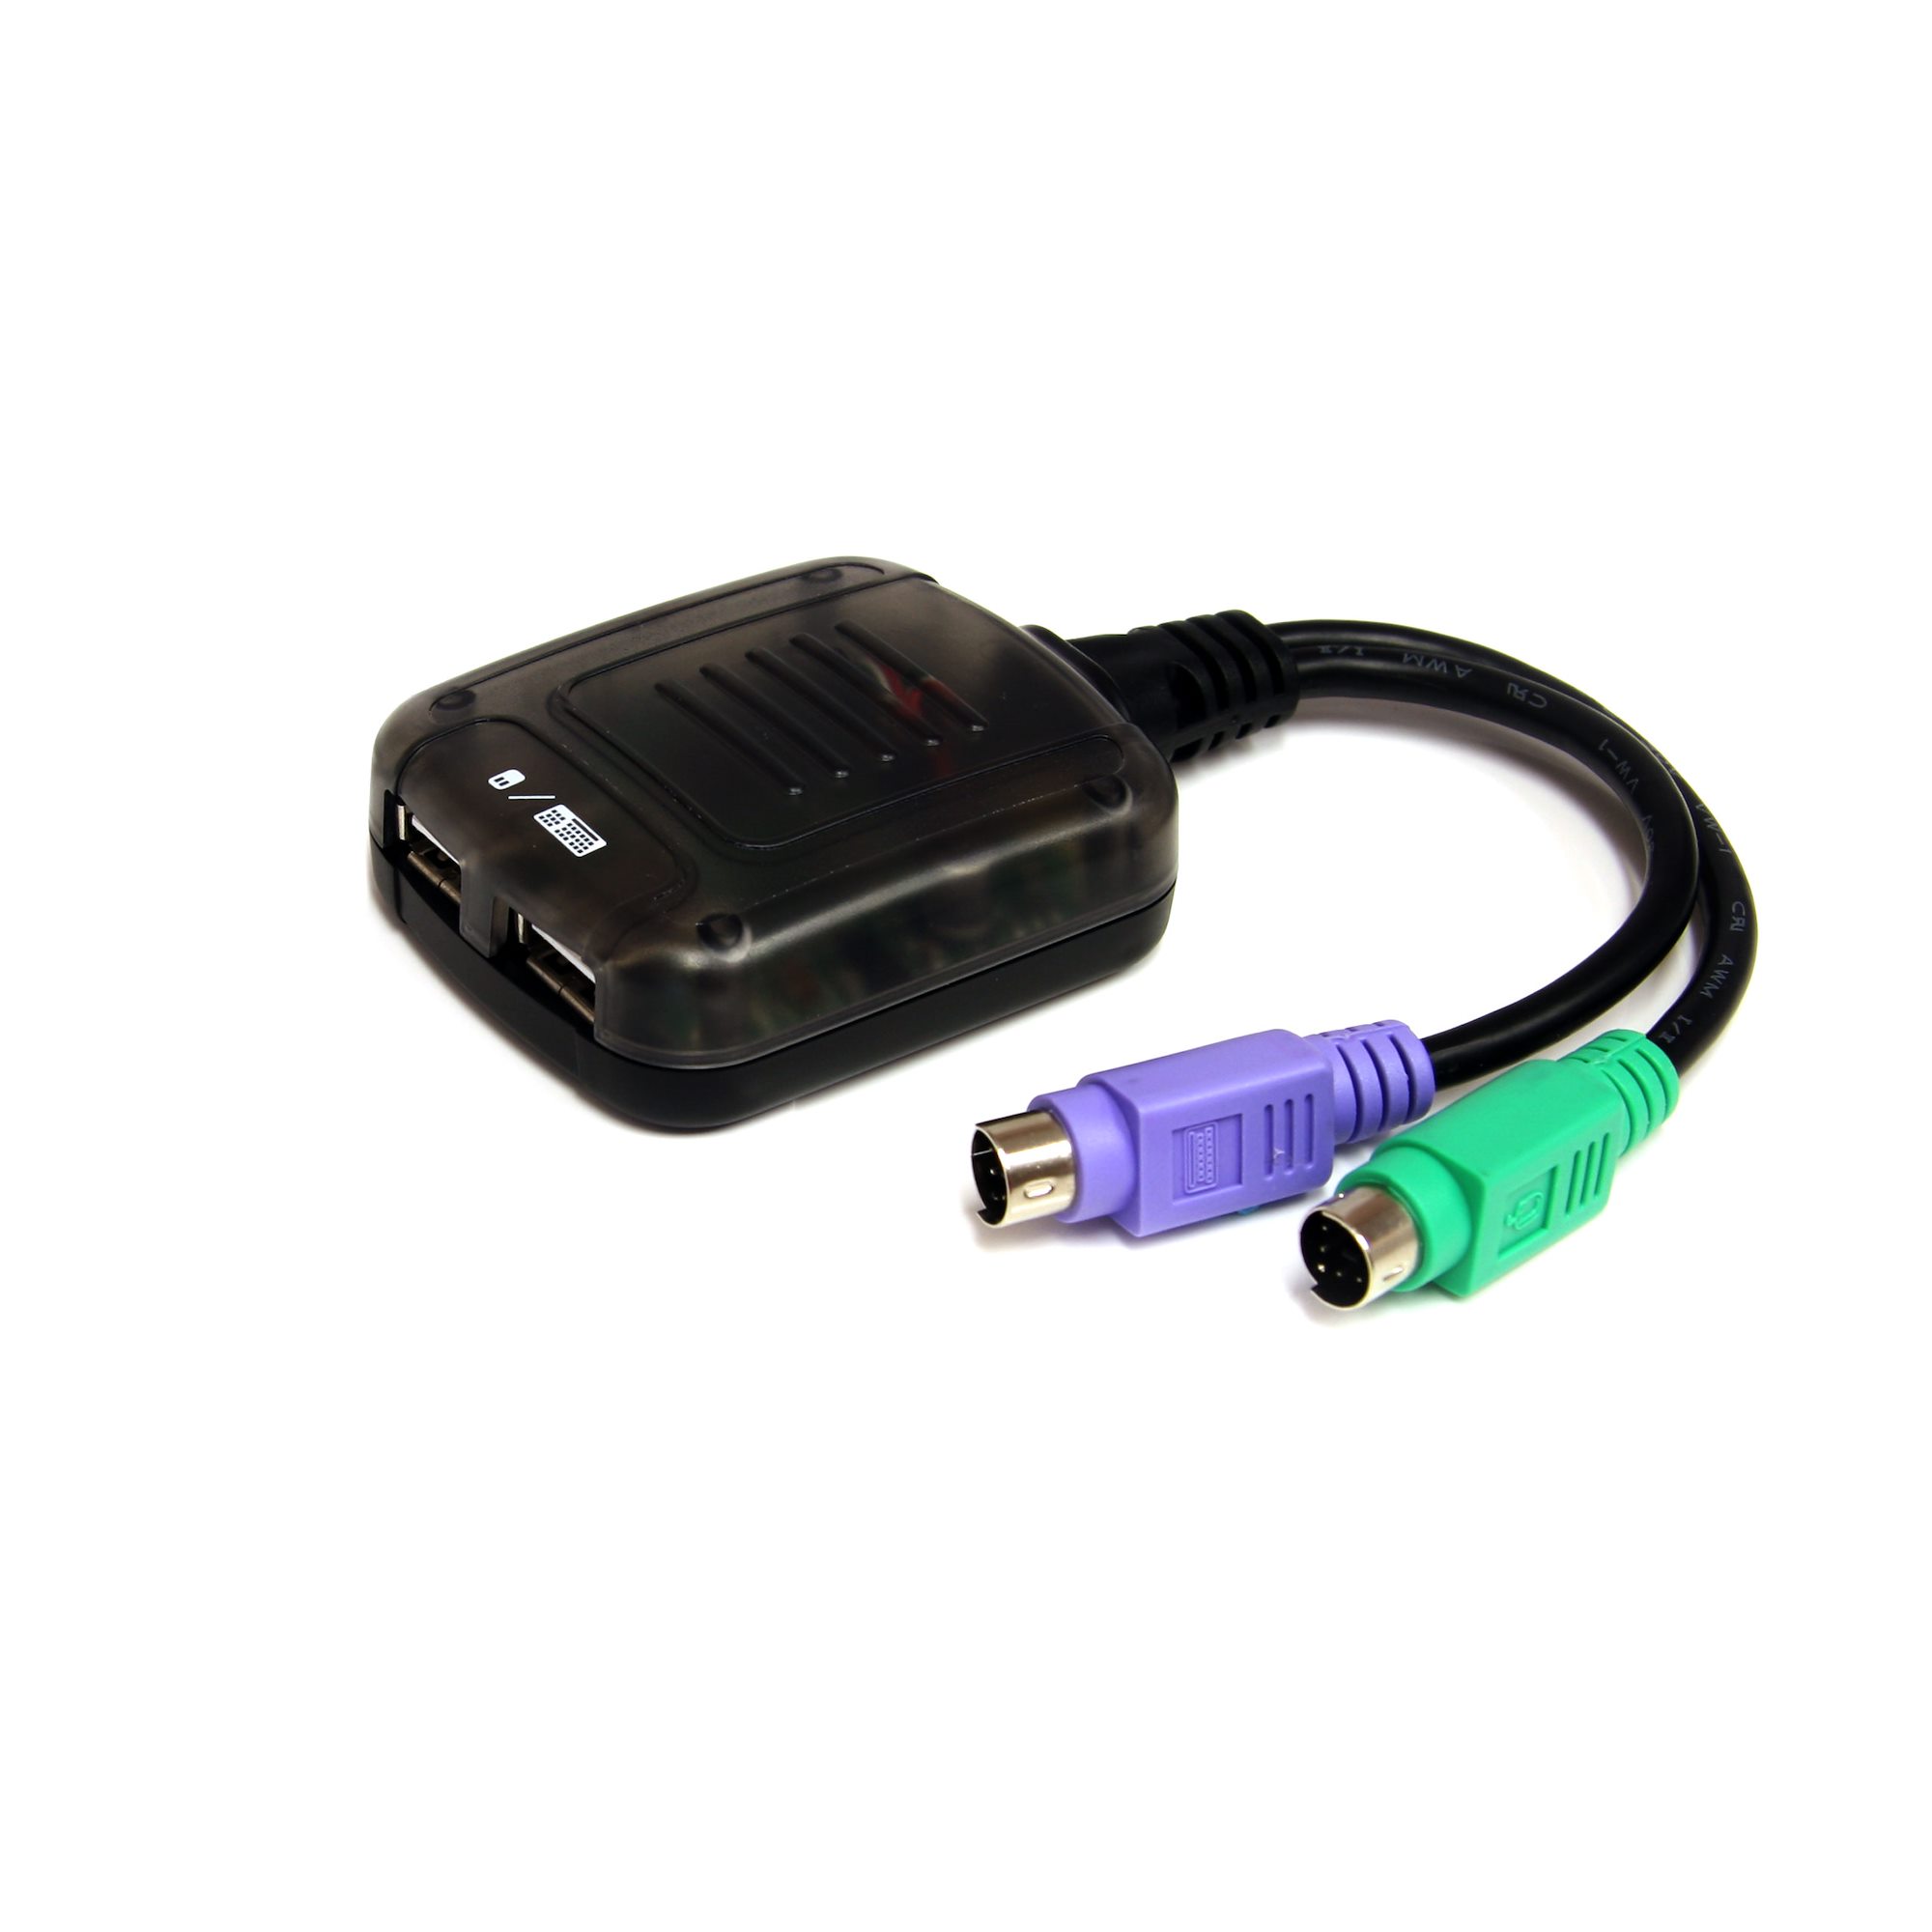 PS2 Keyboard Mouse to USB Coverter Adapter Splitter ER 